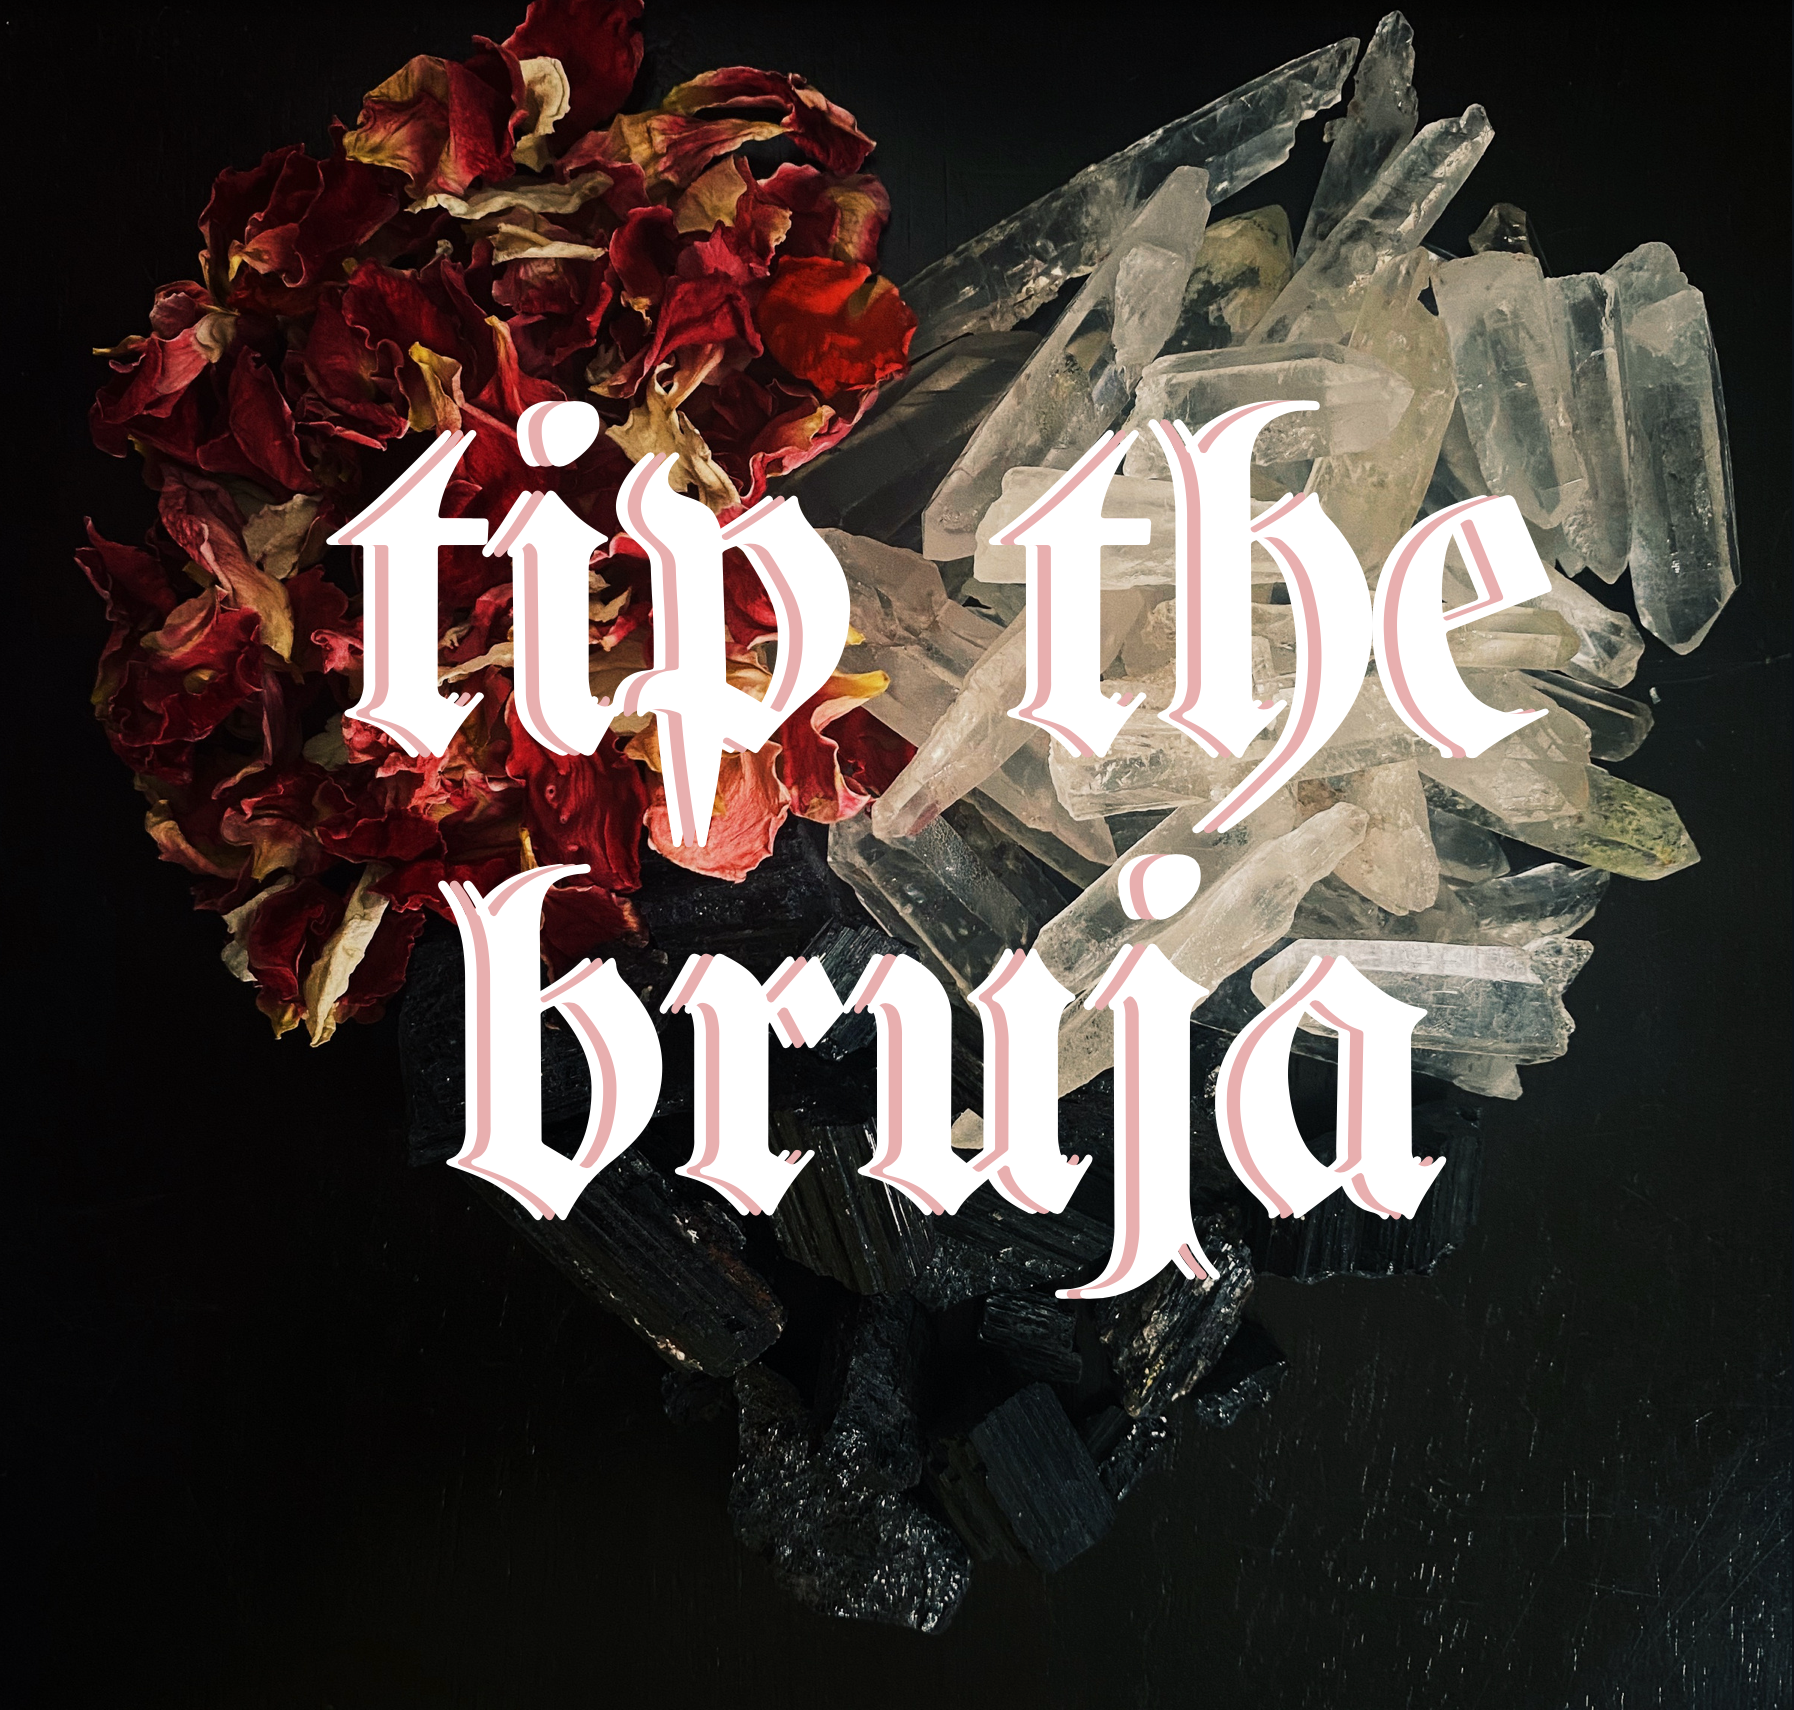 Tip the Bruja